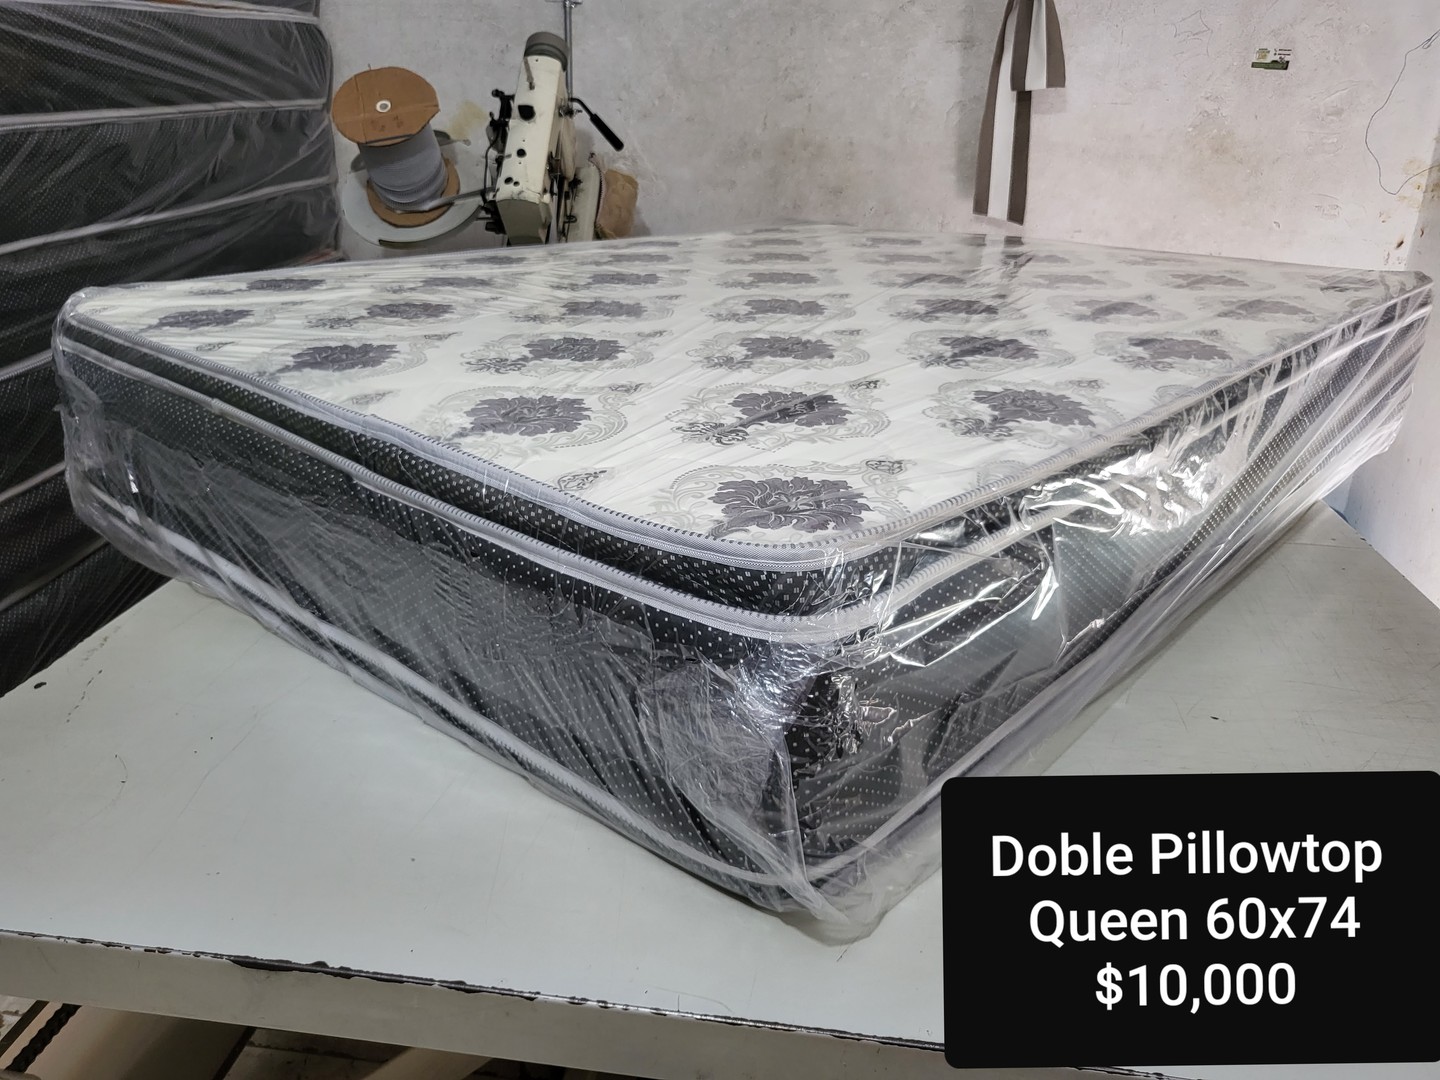 muebles y colchones - Colchon Queen 60 Doble Pillow Top Pillowtop